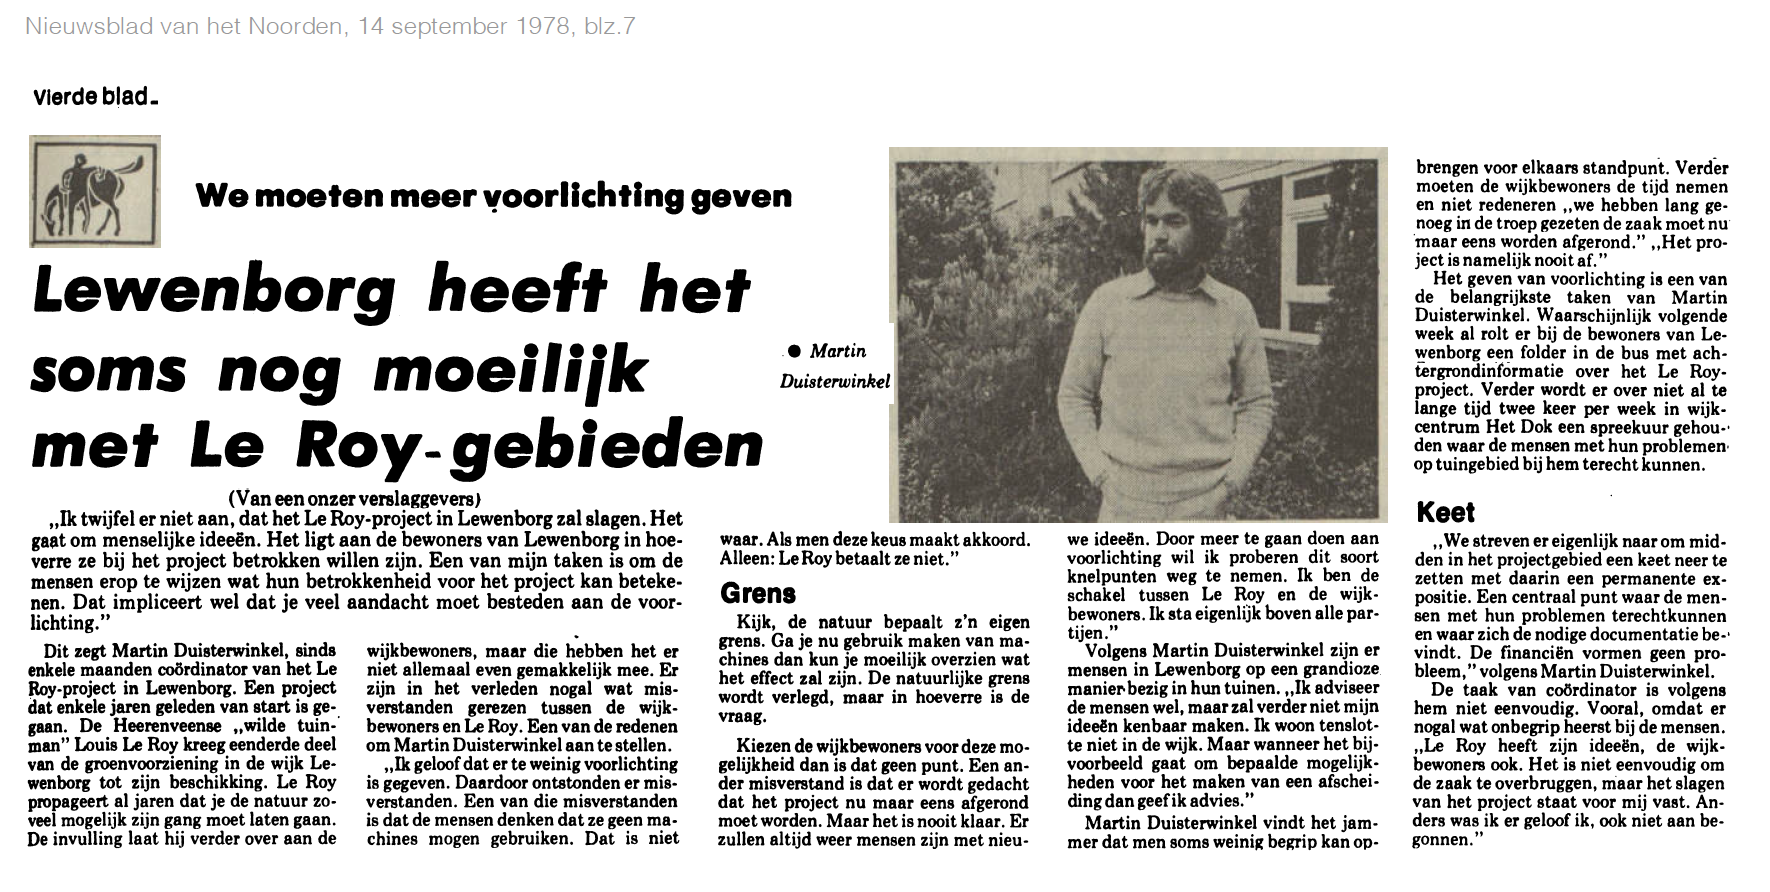 19780914_Lewenborg_heeft_het_nog_moeilijk_met_Le_Roy-gebieden.png